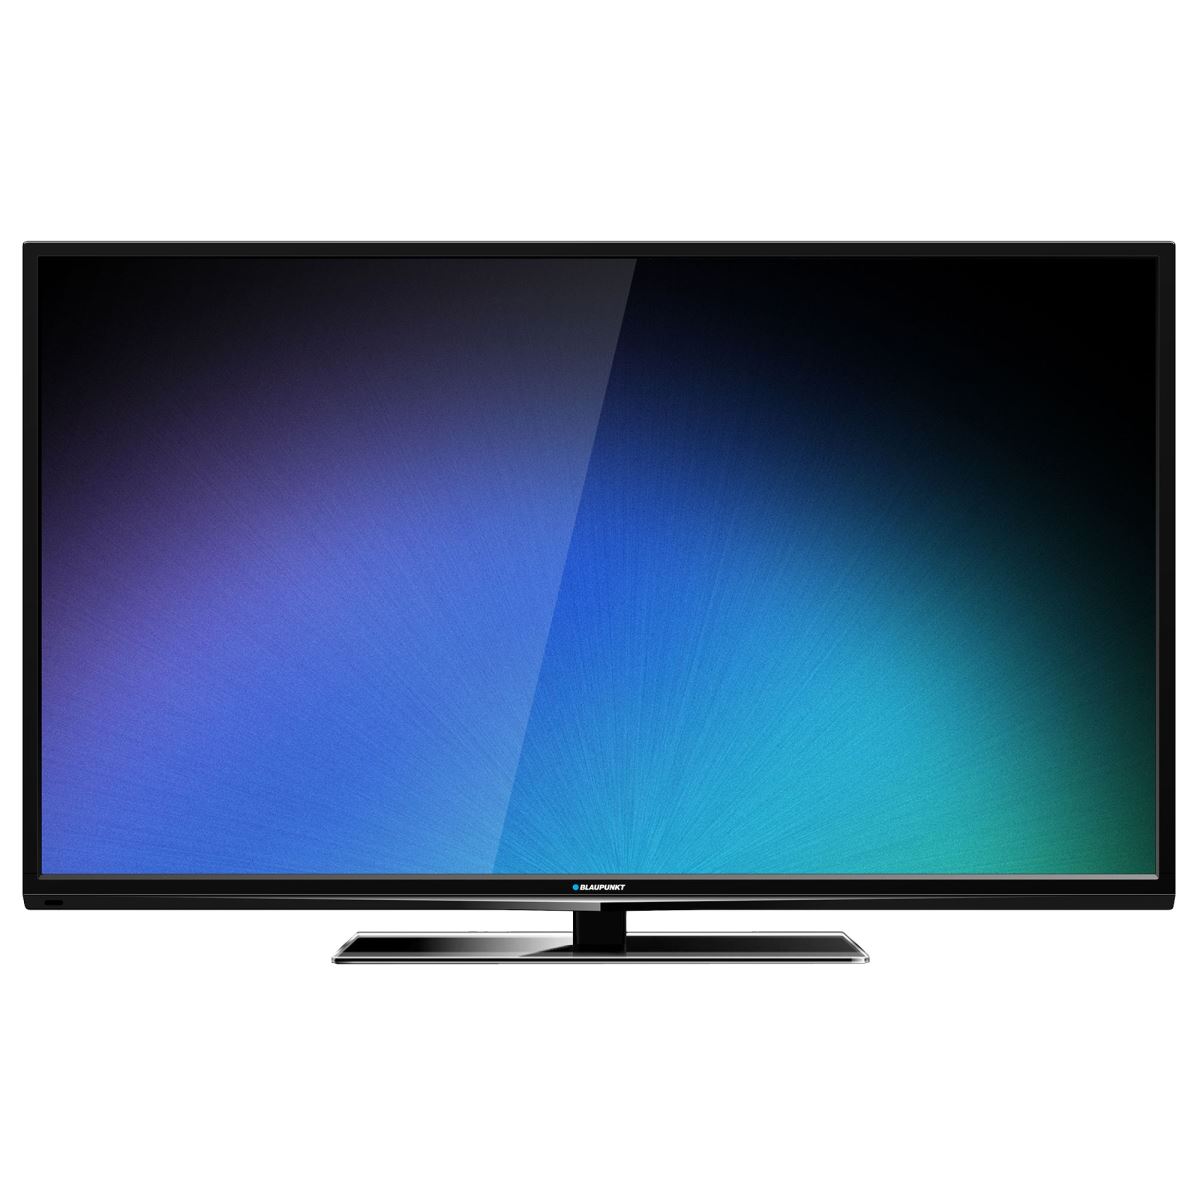 Televizor LED Blaupunkt, BLA-40/148I-GB, 102 cm, Full HD, Slot CI+, Negru